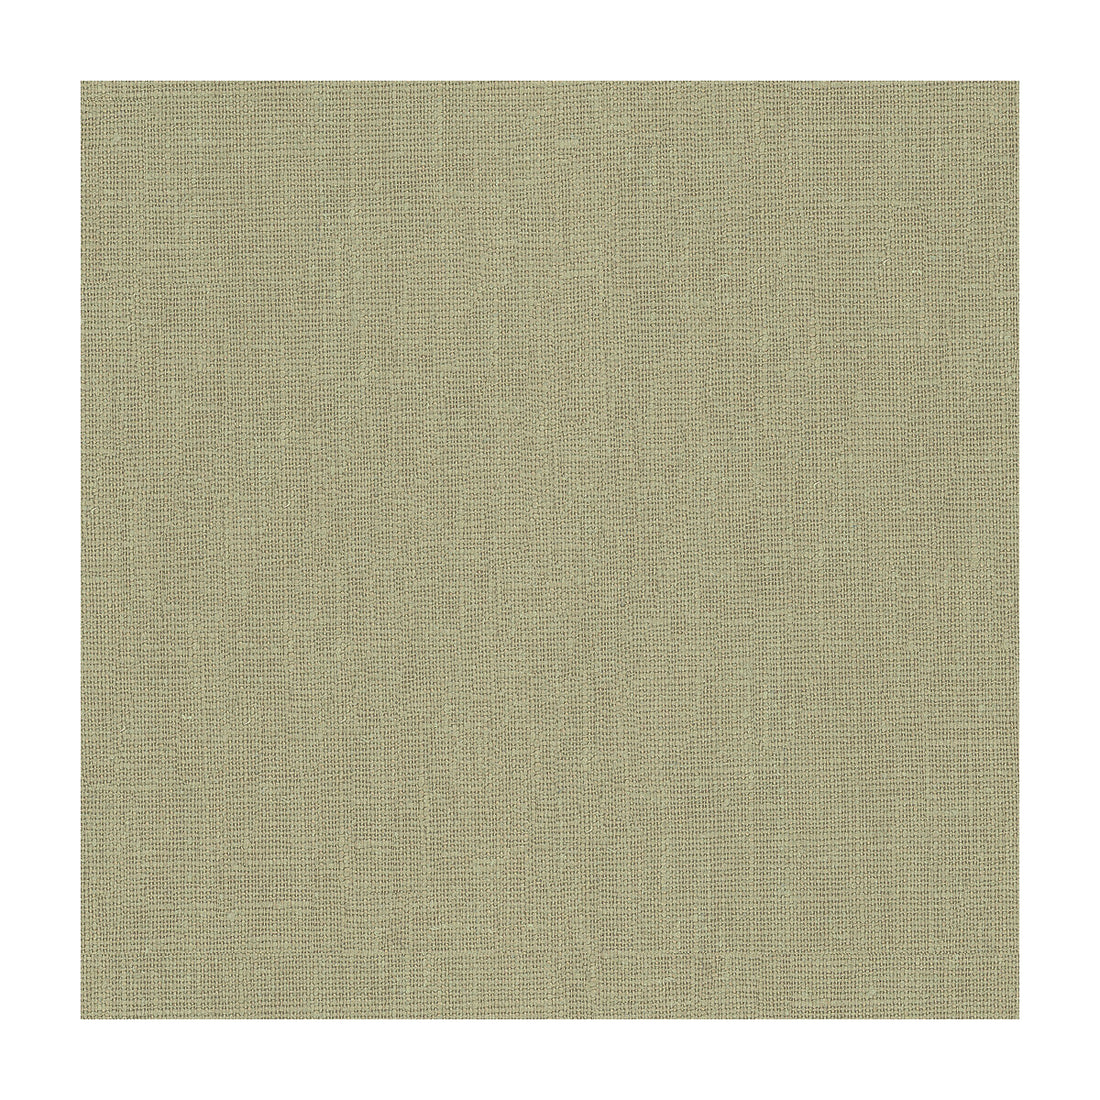 Kravet Basics fabric in 32344-1121 color - pattern 32344.1121.0 - by Kravet Basics